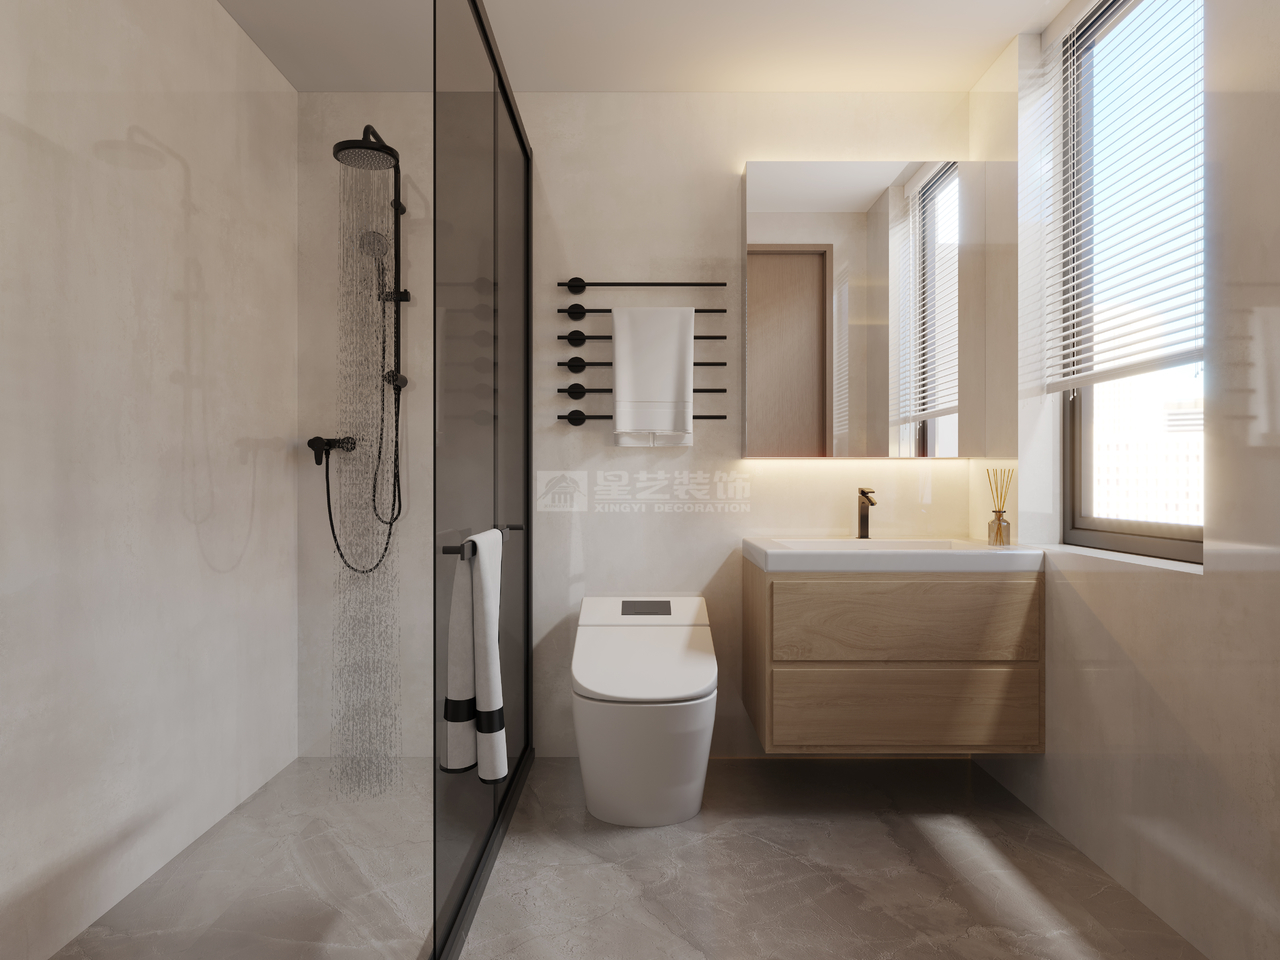 卫浴采用大面积的灰白色铺设

质感自然由内而外的流露

方形盆浴搭配木质干湿柜，在低调中彰显氤氲魅力

简洁大气的大理石纹瓷砖，让空间充满高级感